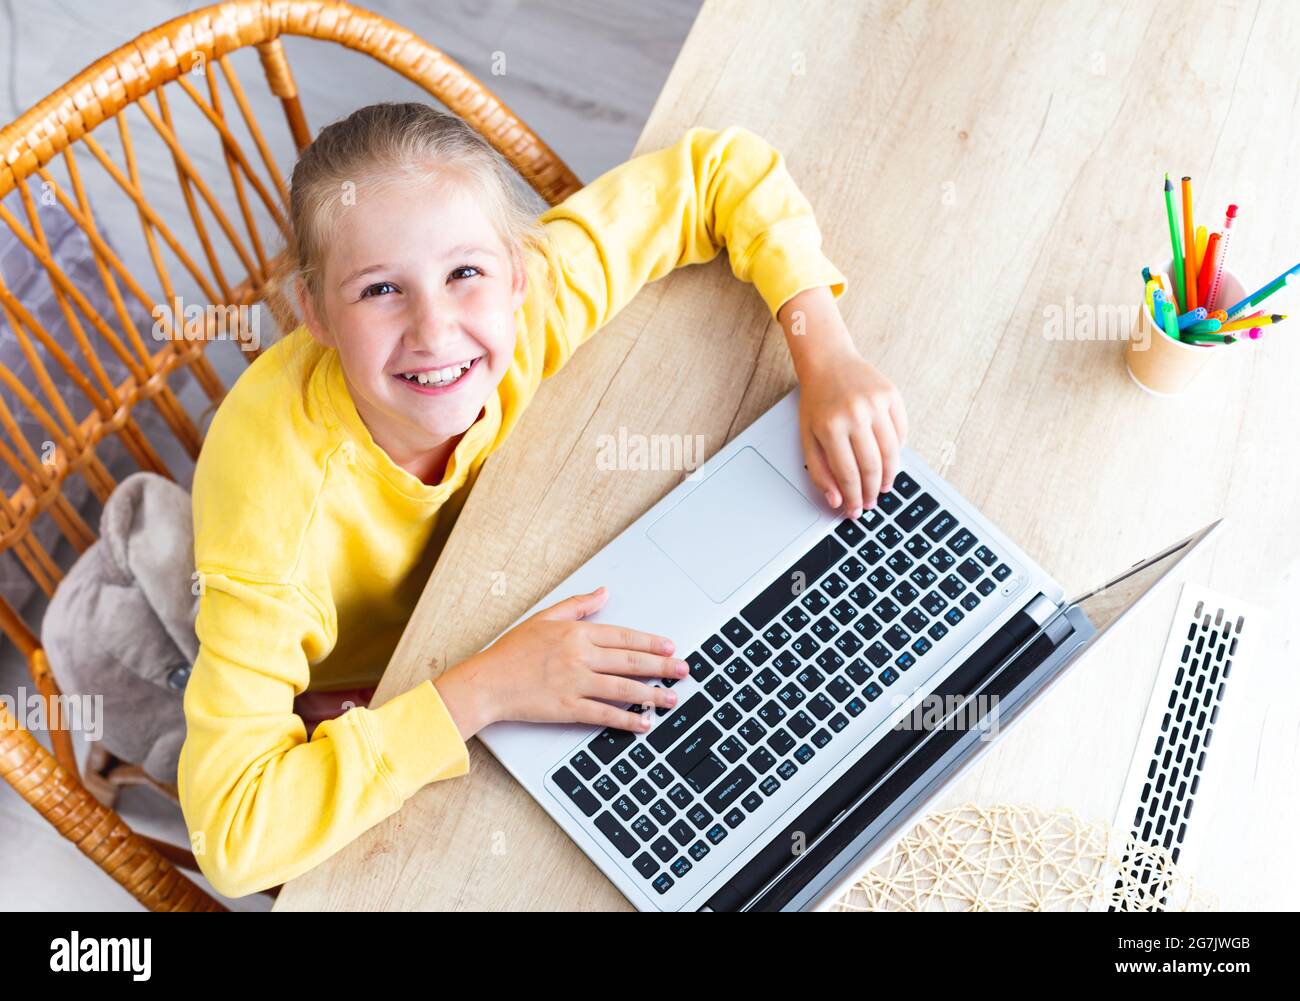 Caucasienne heureuse fille de 10-11 ans est assise dans une chaise en osier à un bureau en bois clair, les mains sur un clavier d'ordinateur portable, regardant la caméra, vue de dessus Banque D'Images